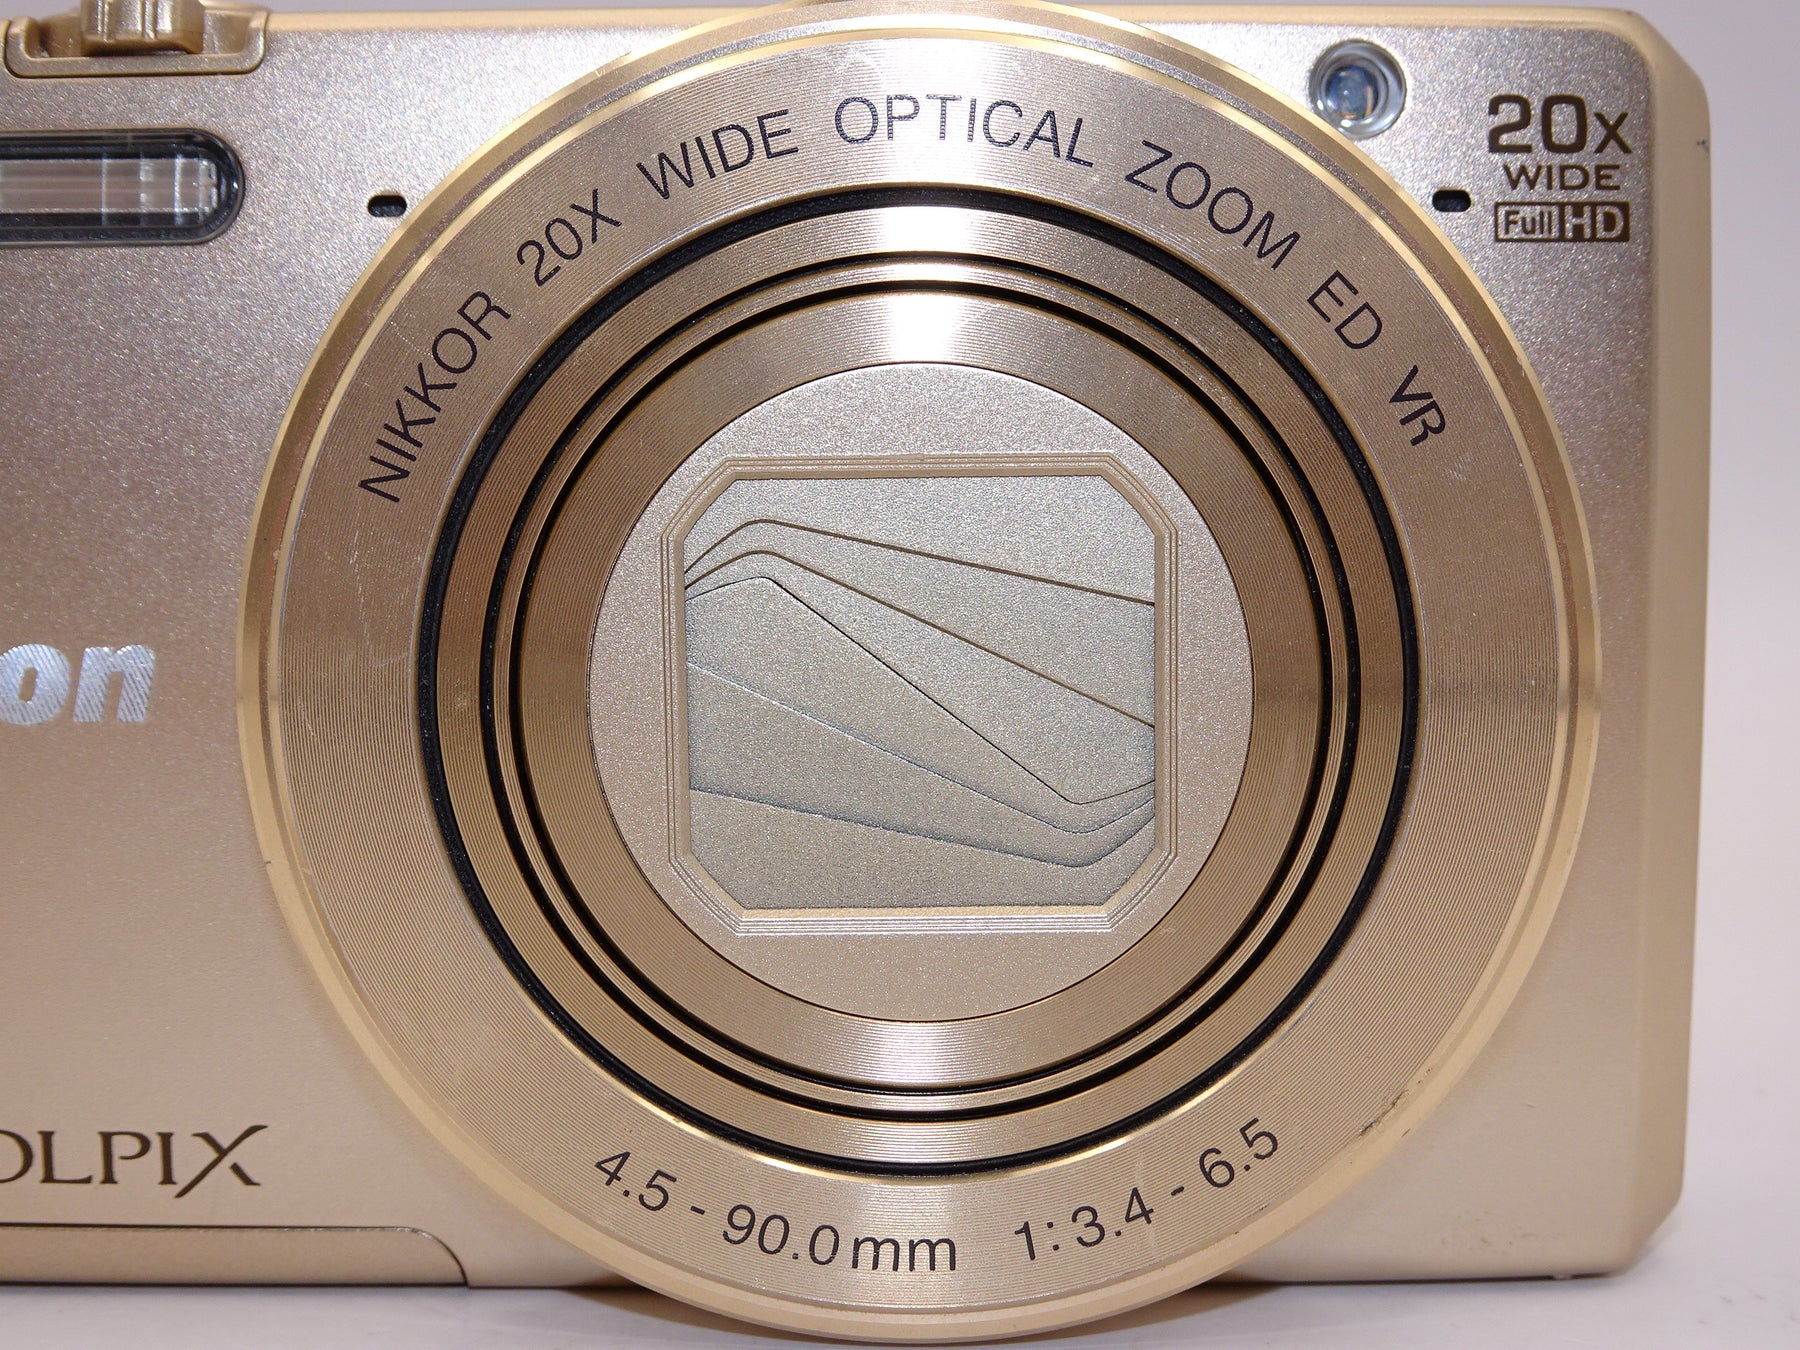 【外観並級】Nikon デジタルカメラ COOLPIX S7000 ゴールド